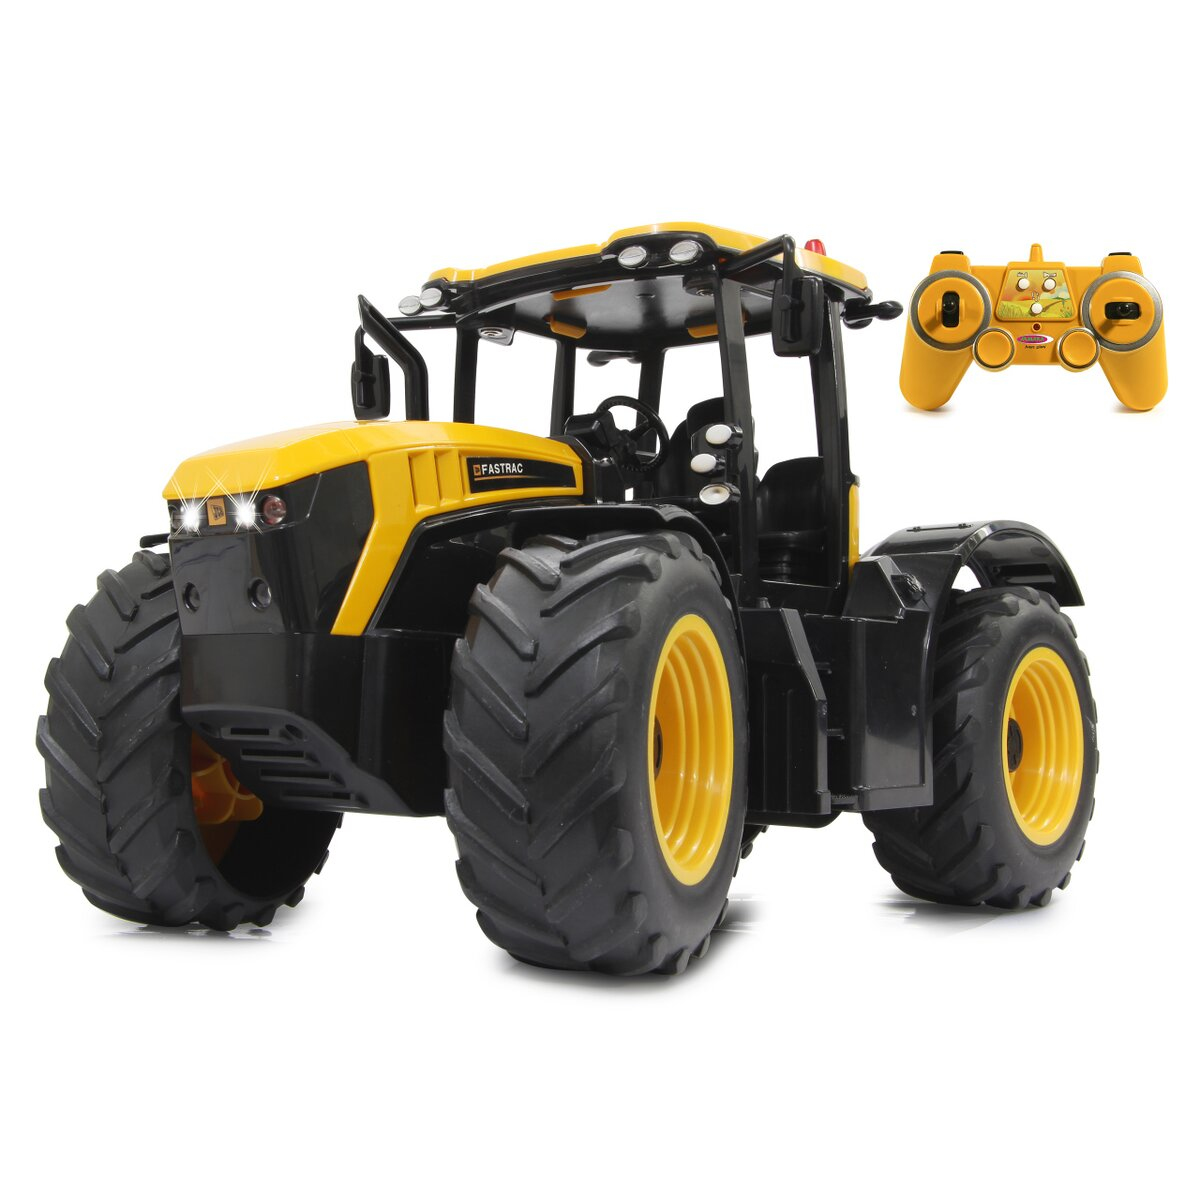 JAMARA 405300 - Traktor - 1:16 - 6 Jahr(e) - 950 g